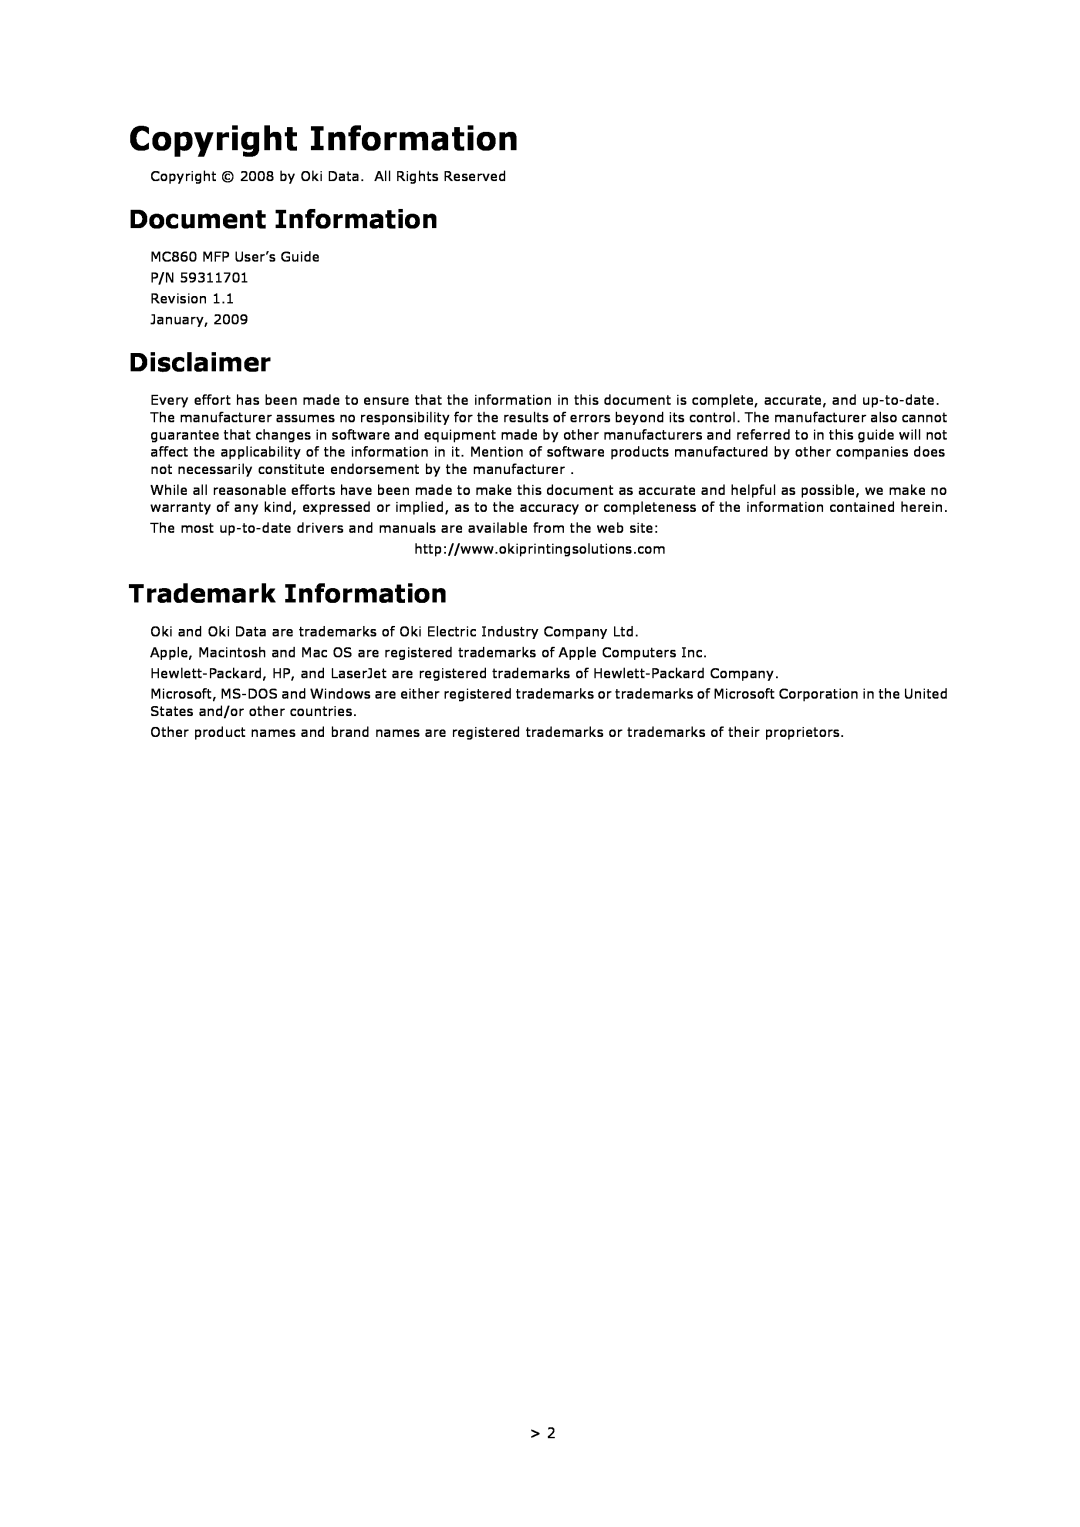 Oki MC860n MFP manual Copyright Information, Document Information, Disclaimer, Trademark Information 